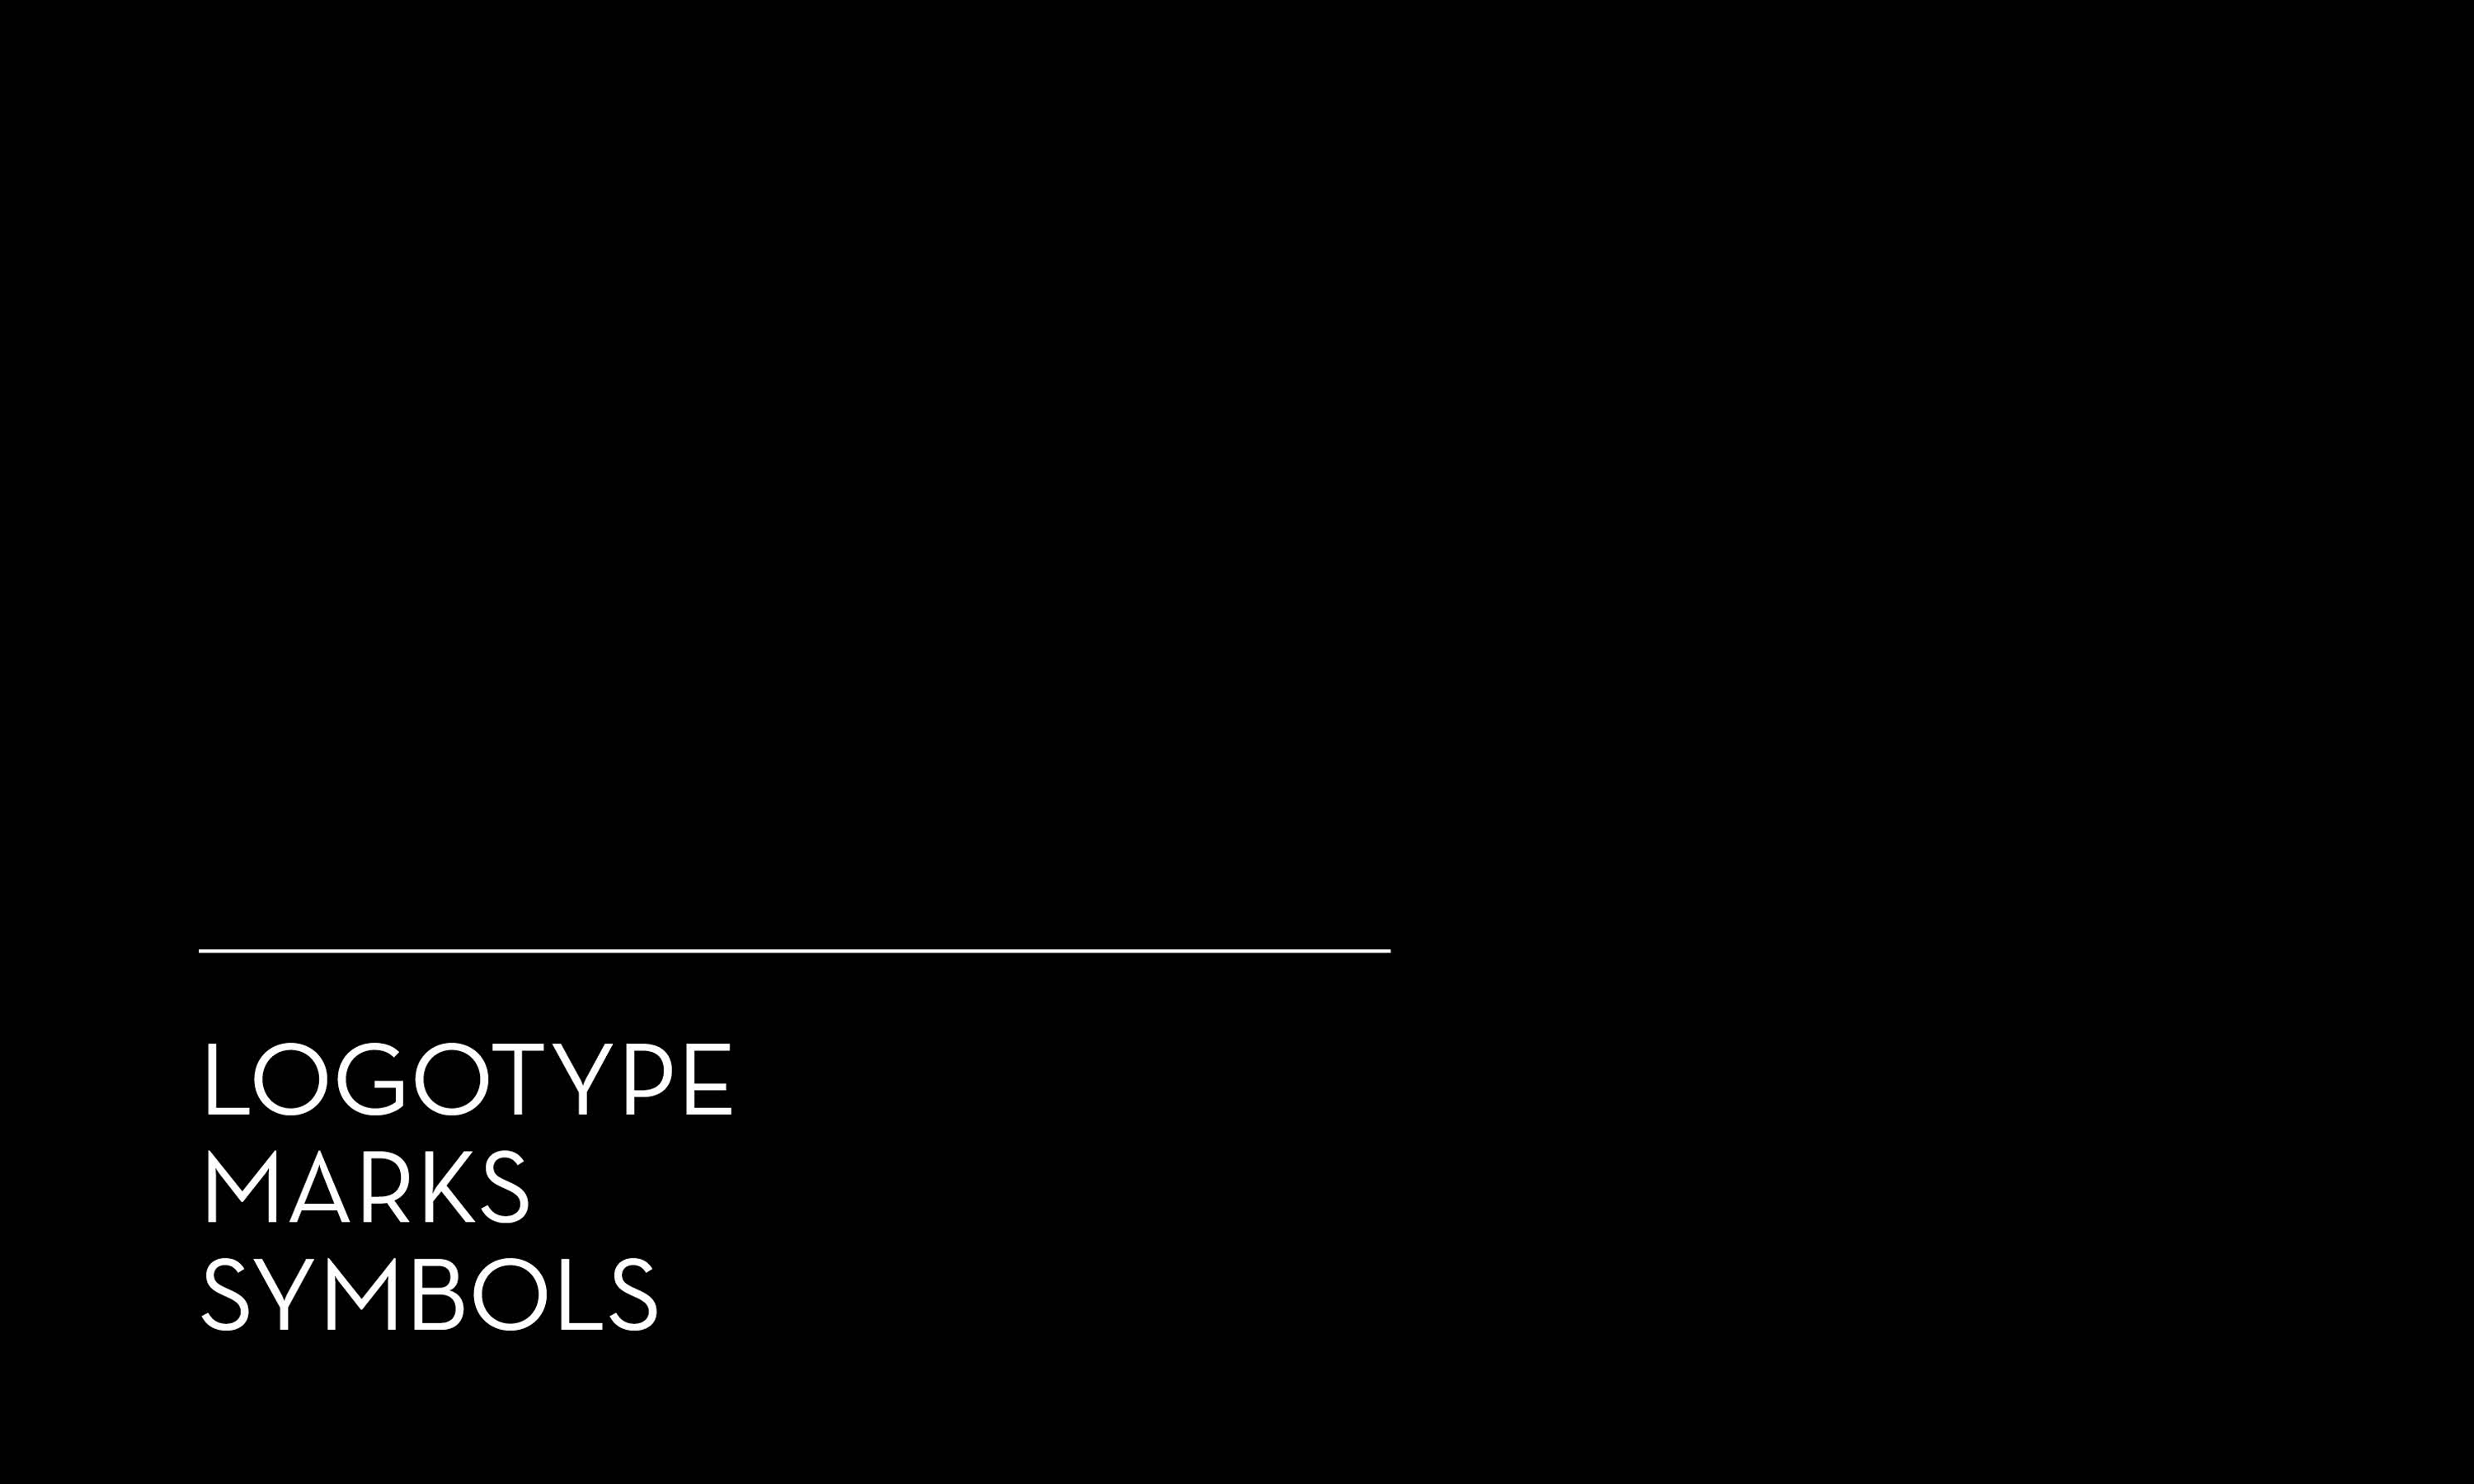 Logotype/Marks/Symbols